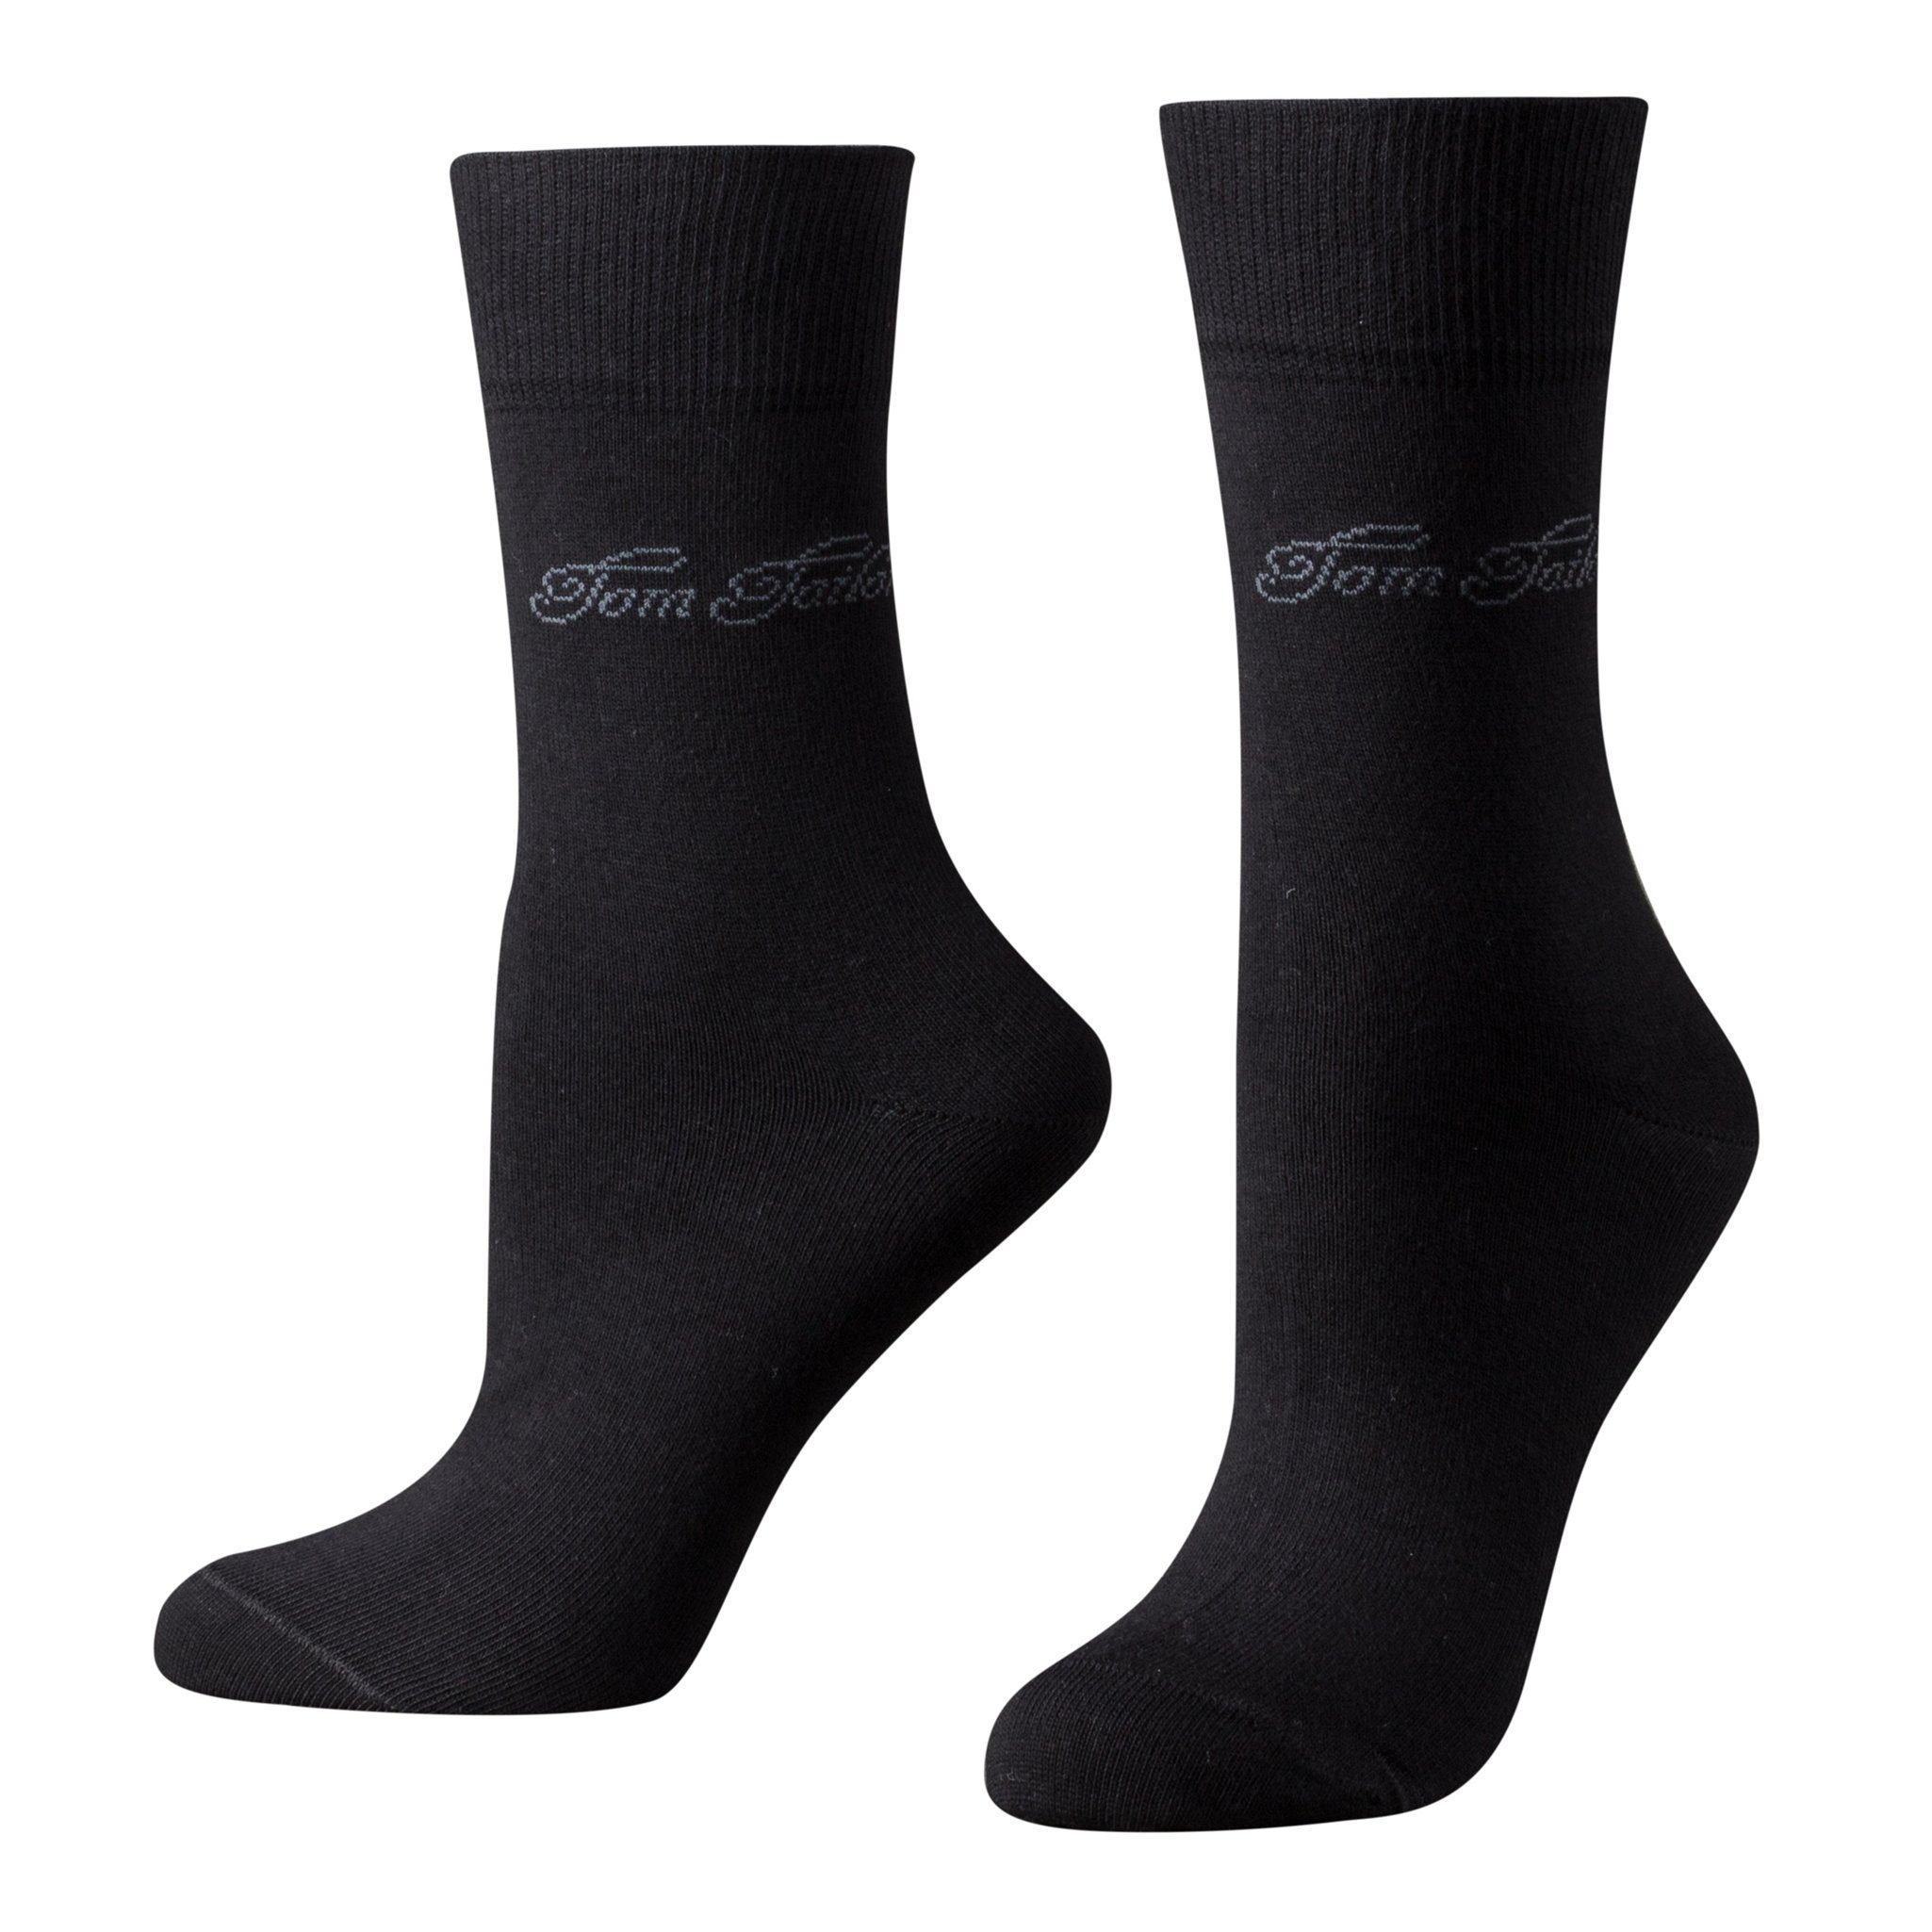 TOM TAILOR Socken 9702610042 Tom Tailor 2er Pack Basic Women Socks 9702 610 black schwarz Doppelpack Strümpfe Socken